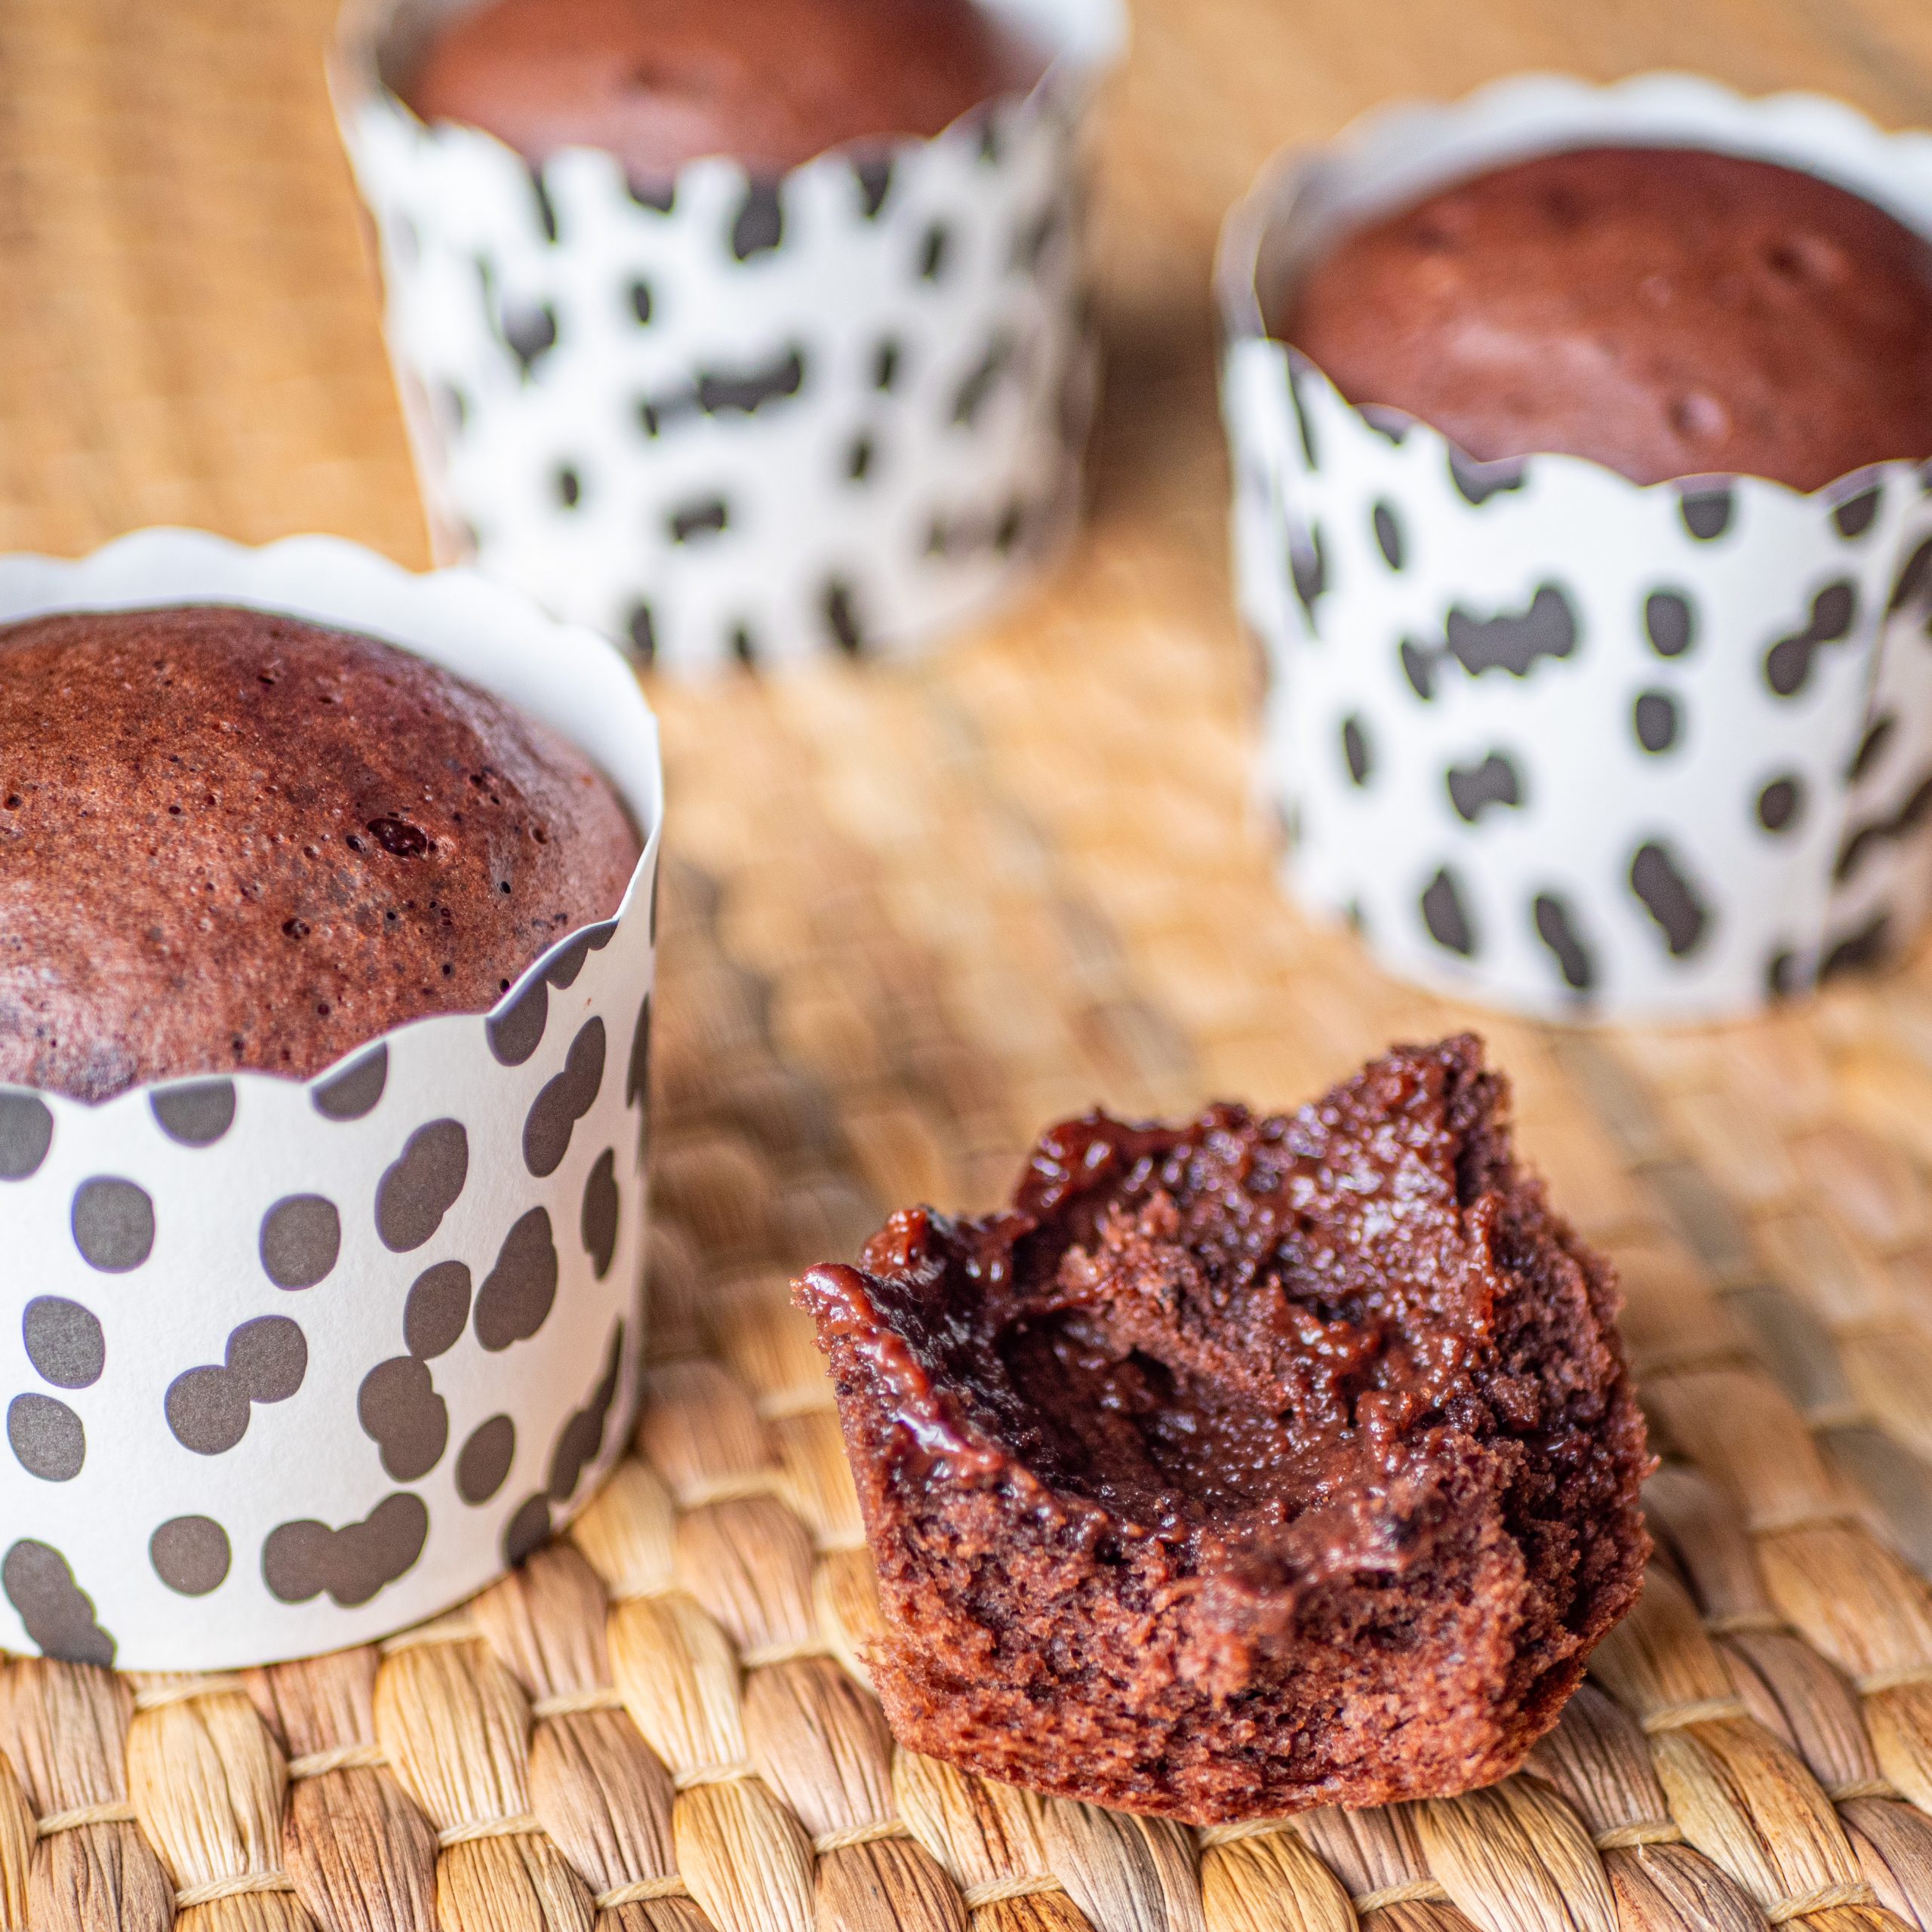 Mushi pan - Muffins au chocolat à la vapeur - Recette japonaise